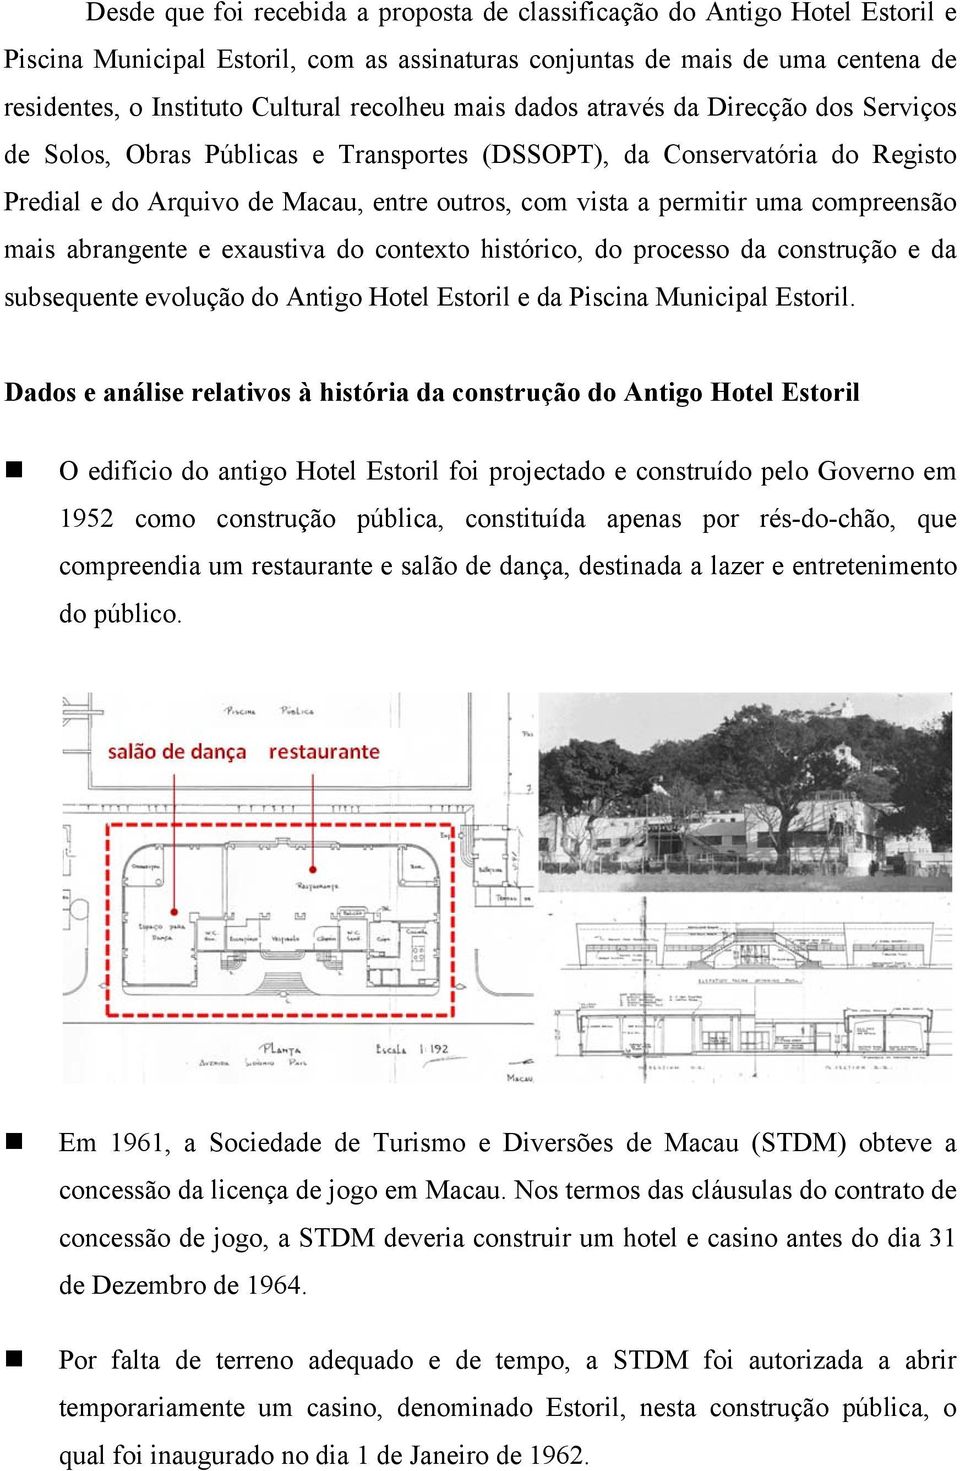 compreensão mais abrangente e exaustiva do contexto histórico, do processo da construção e da subsequente evolução do Antigo Hotel Estoril e da Piscina Municipal Estoril.